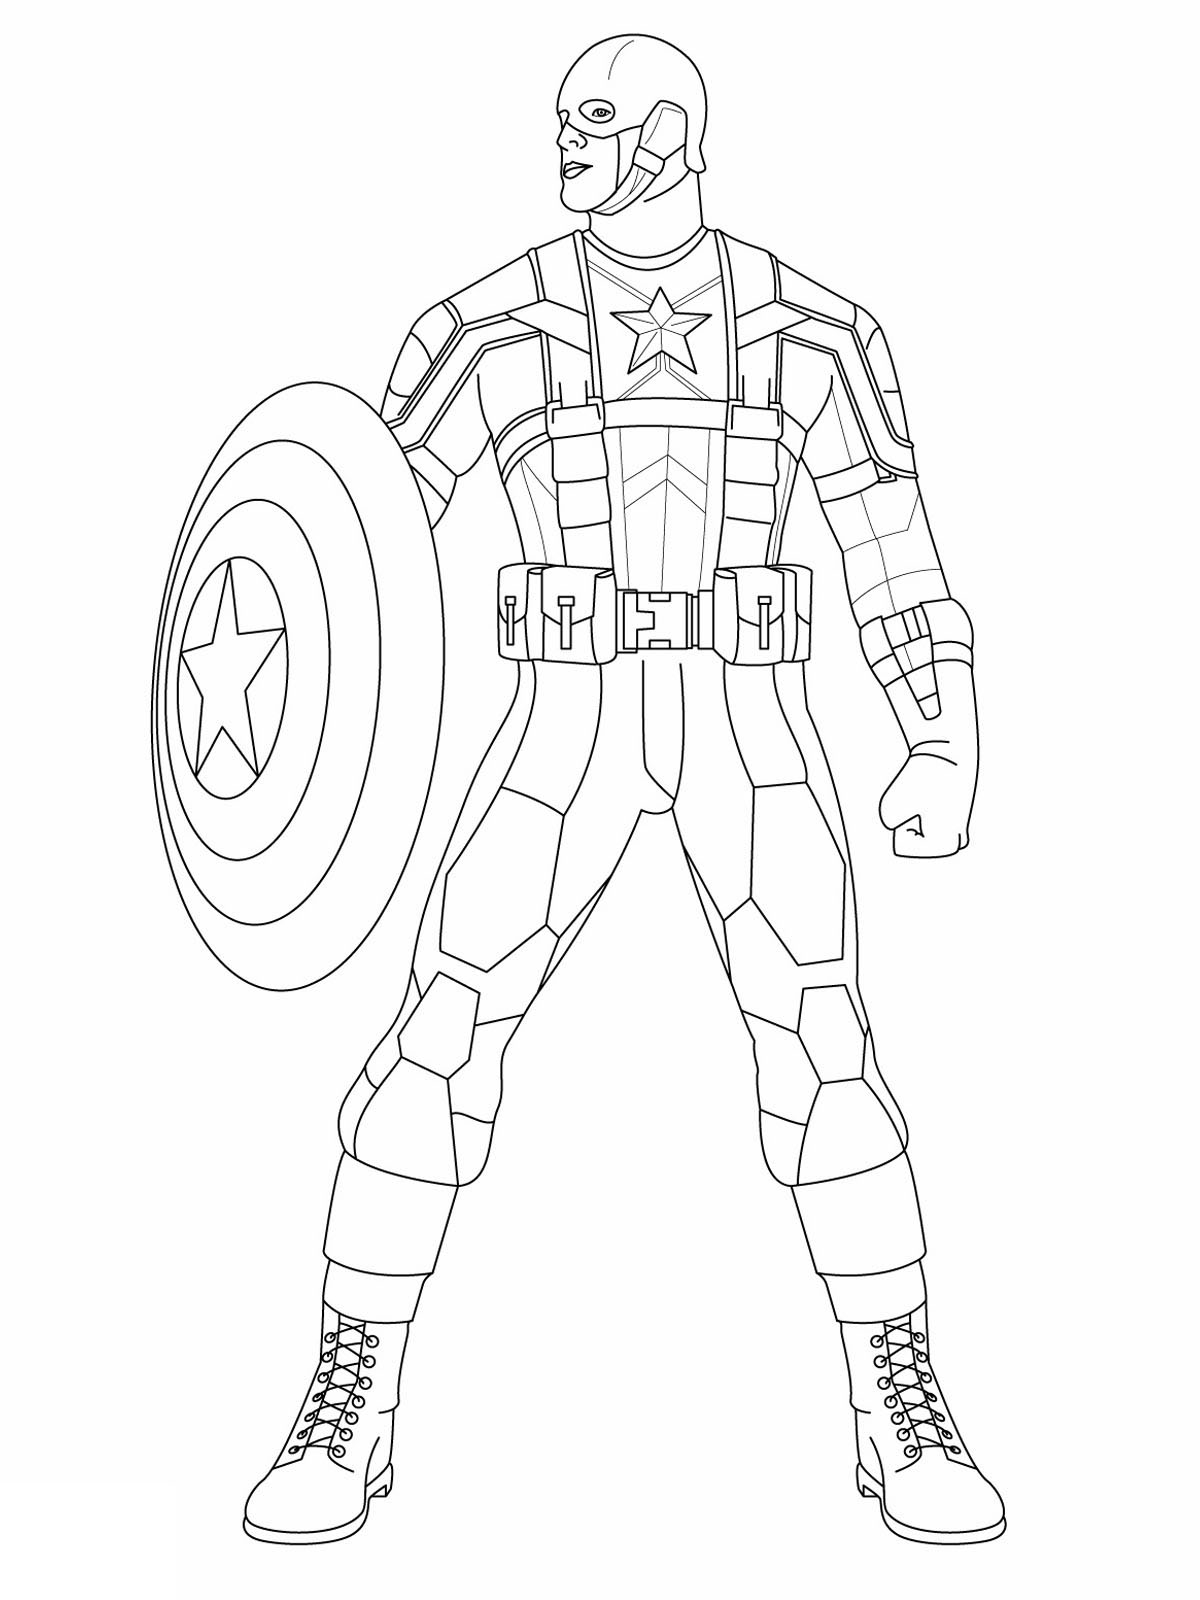 Páginas para colorear del Capitán América para niños